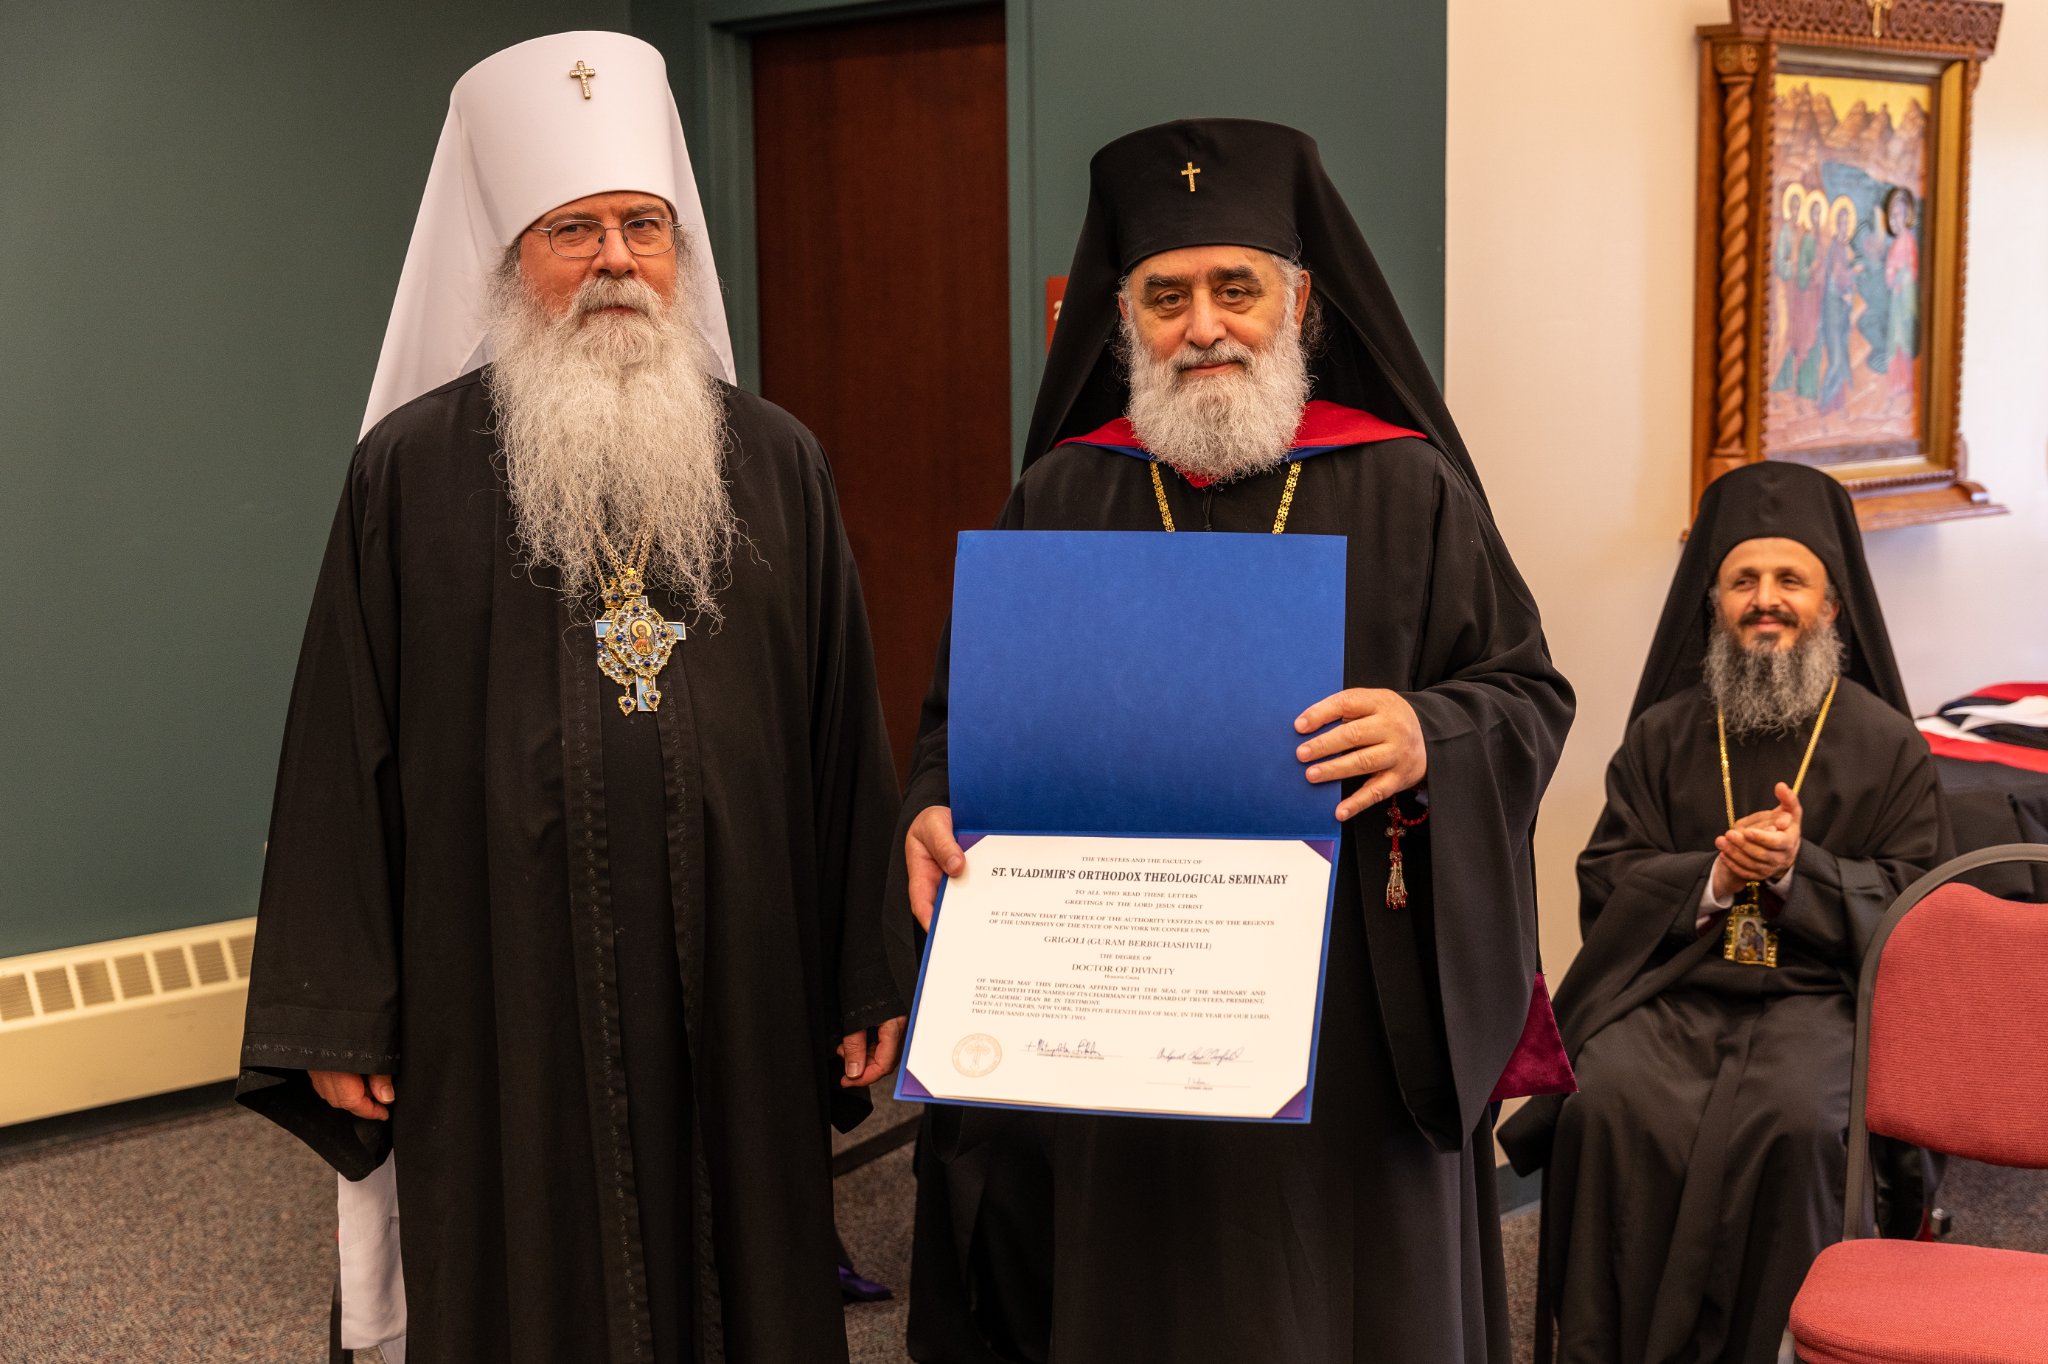 Met Grigoli receives honorary doctorate